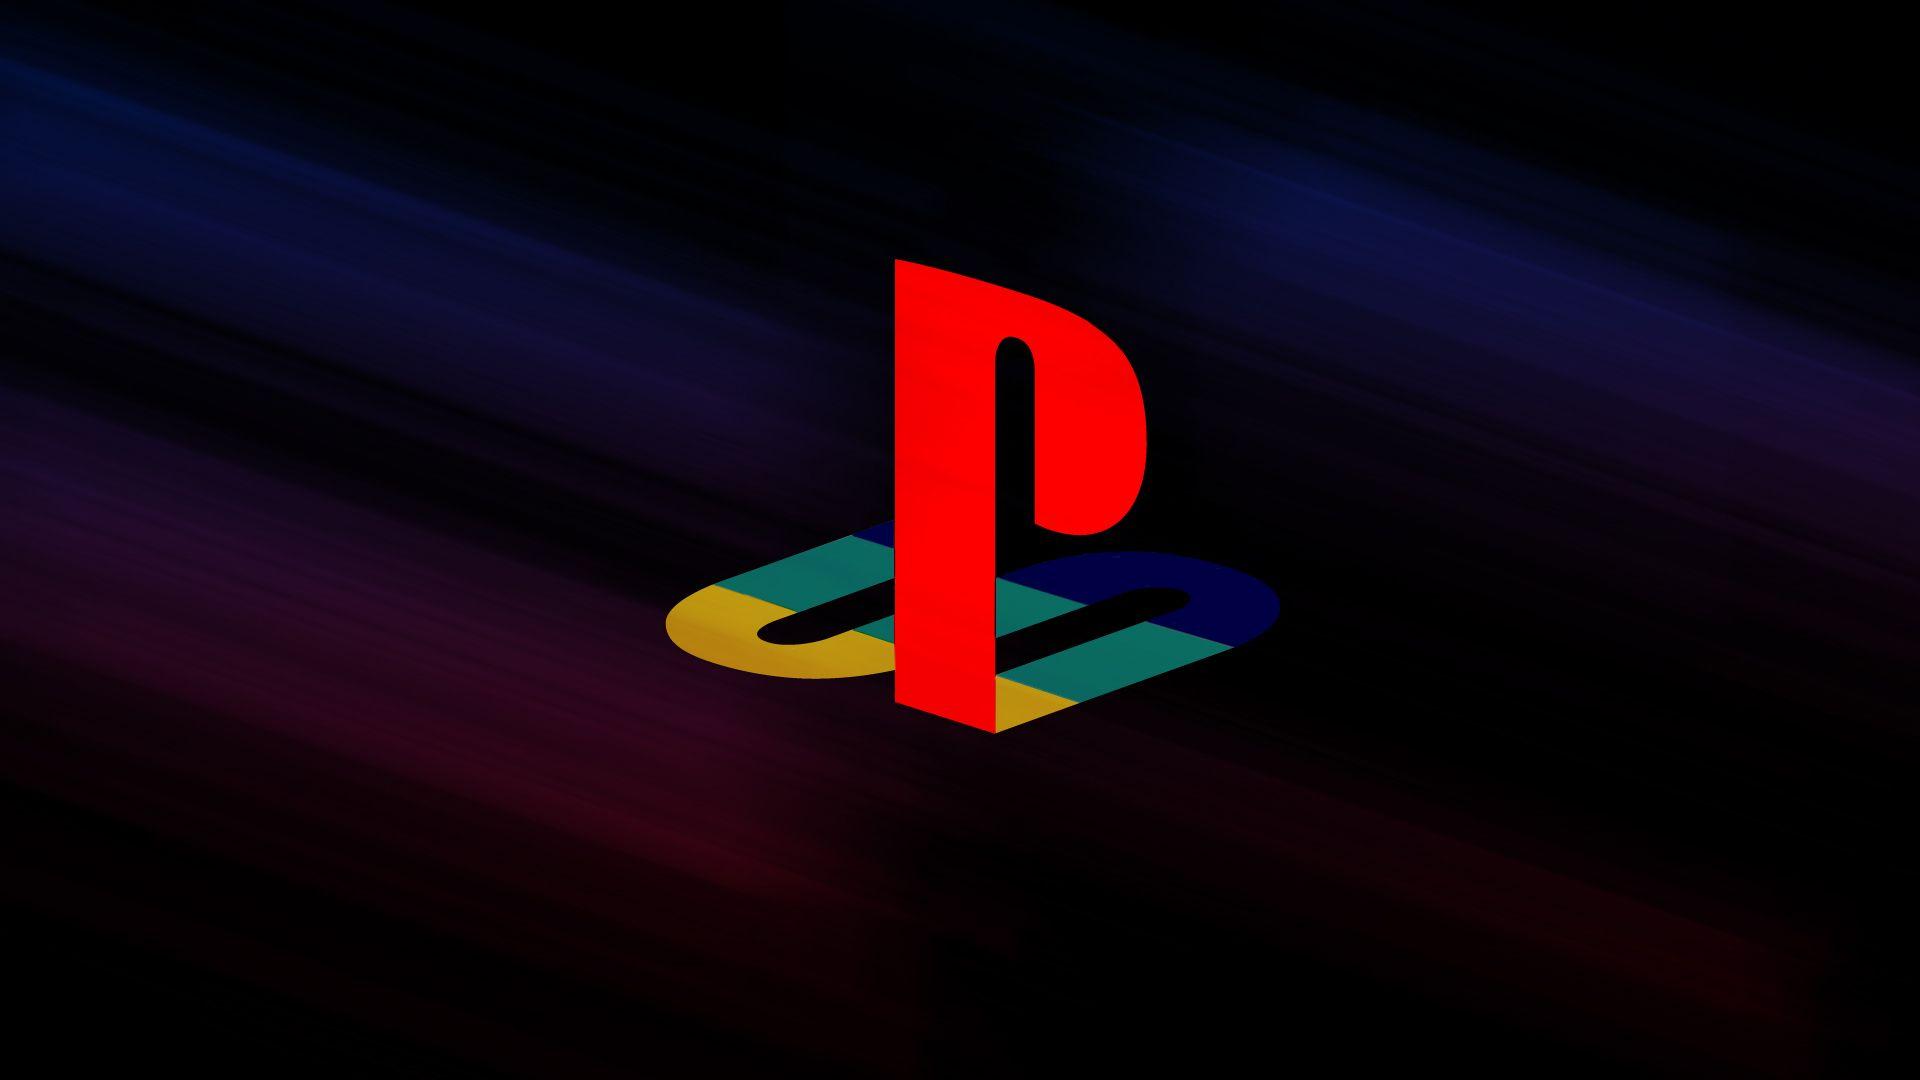 Sony Play Station PS Logo Wallpaper. Encyclopedia